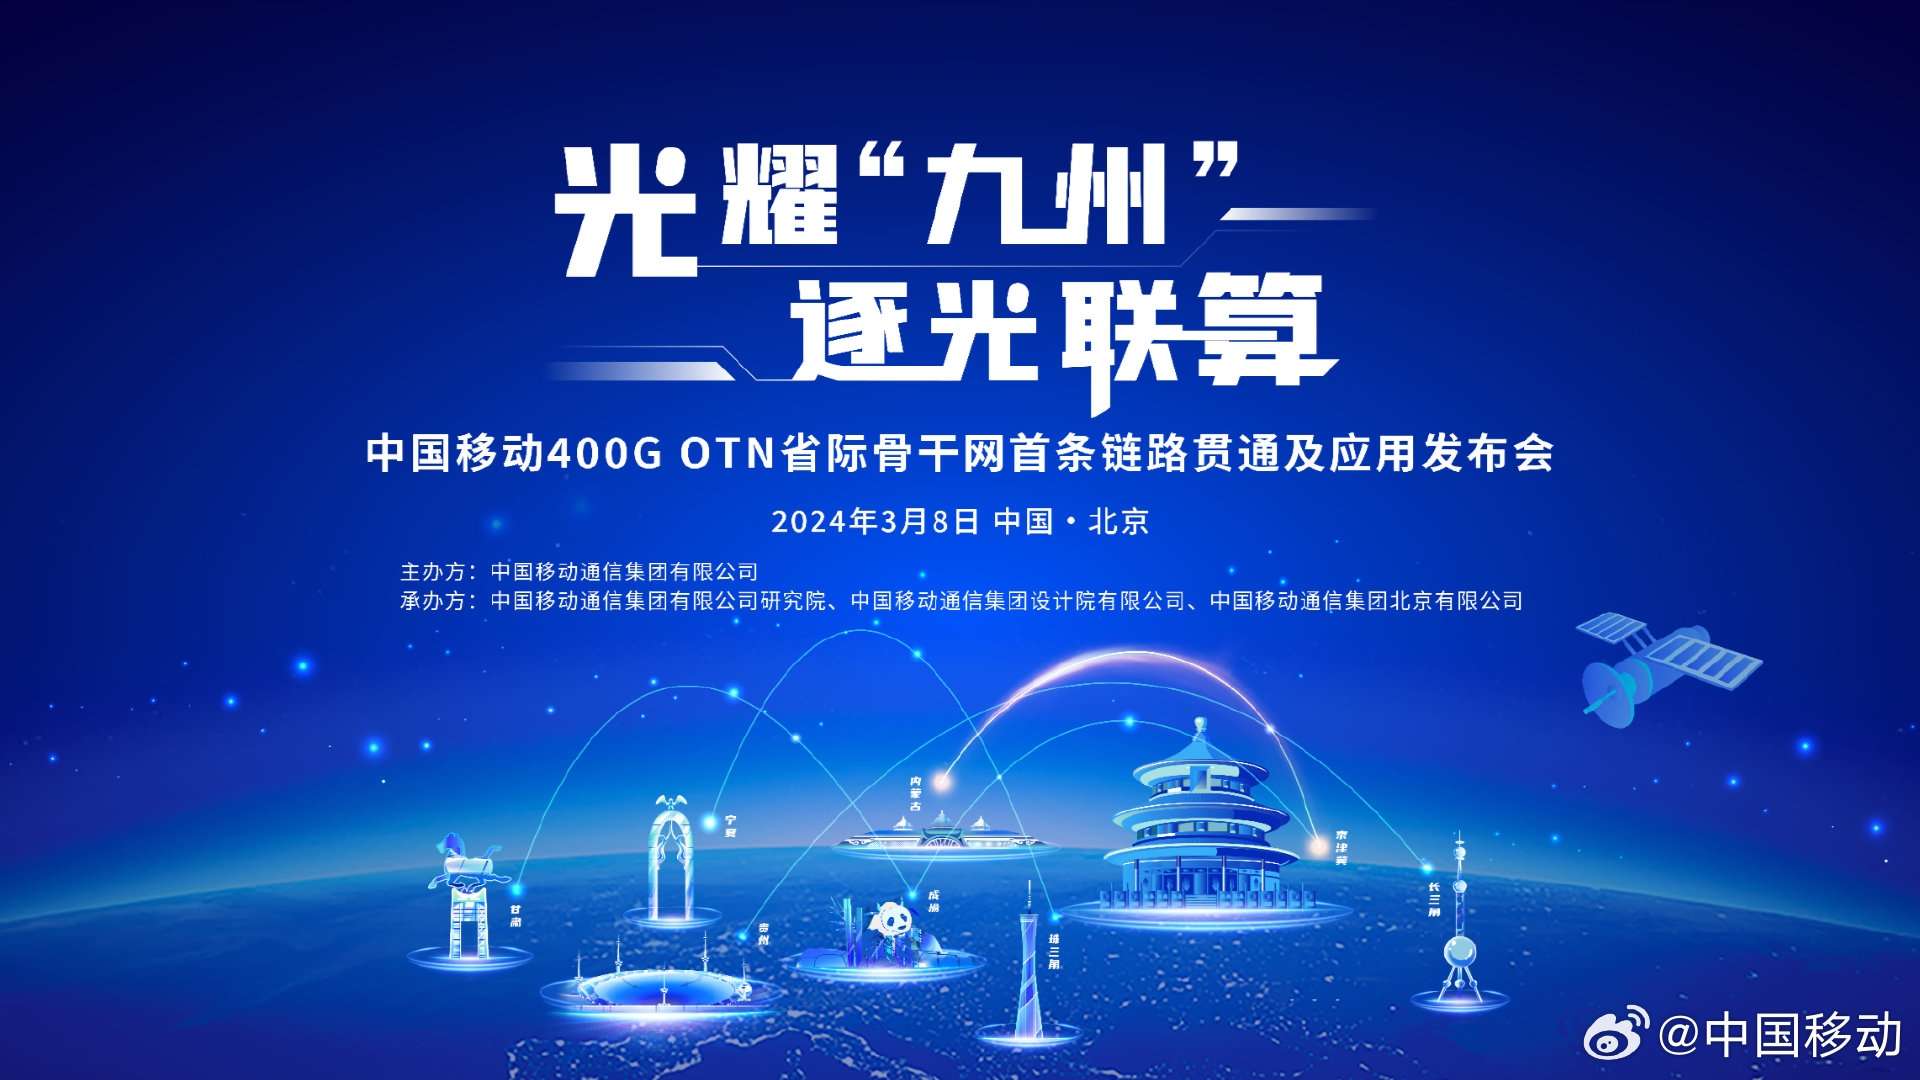 中国移动400G OTN首条链路贯通及应用发布会